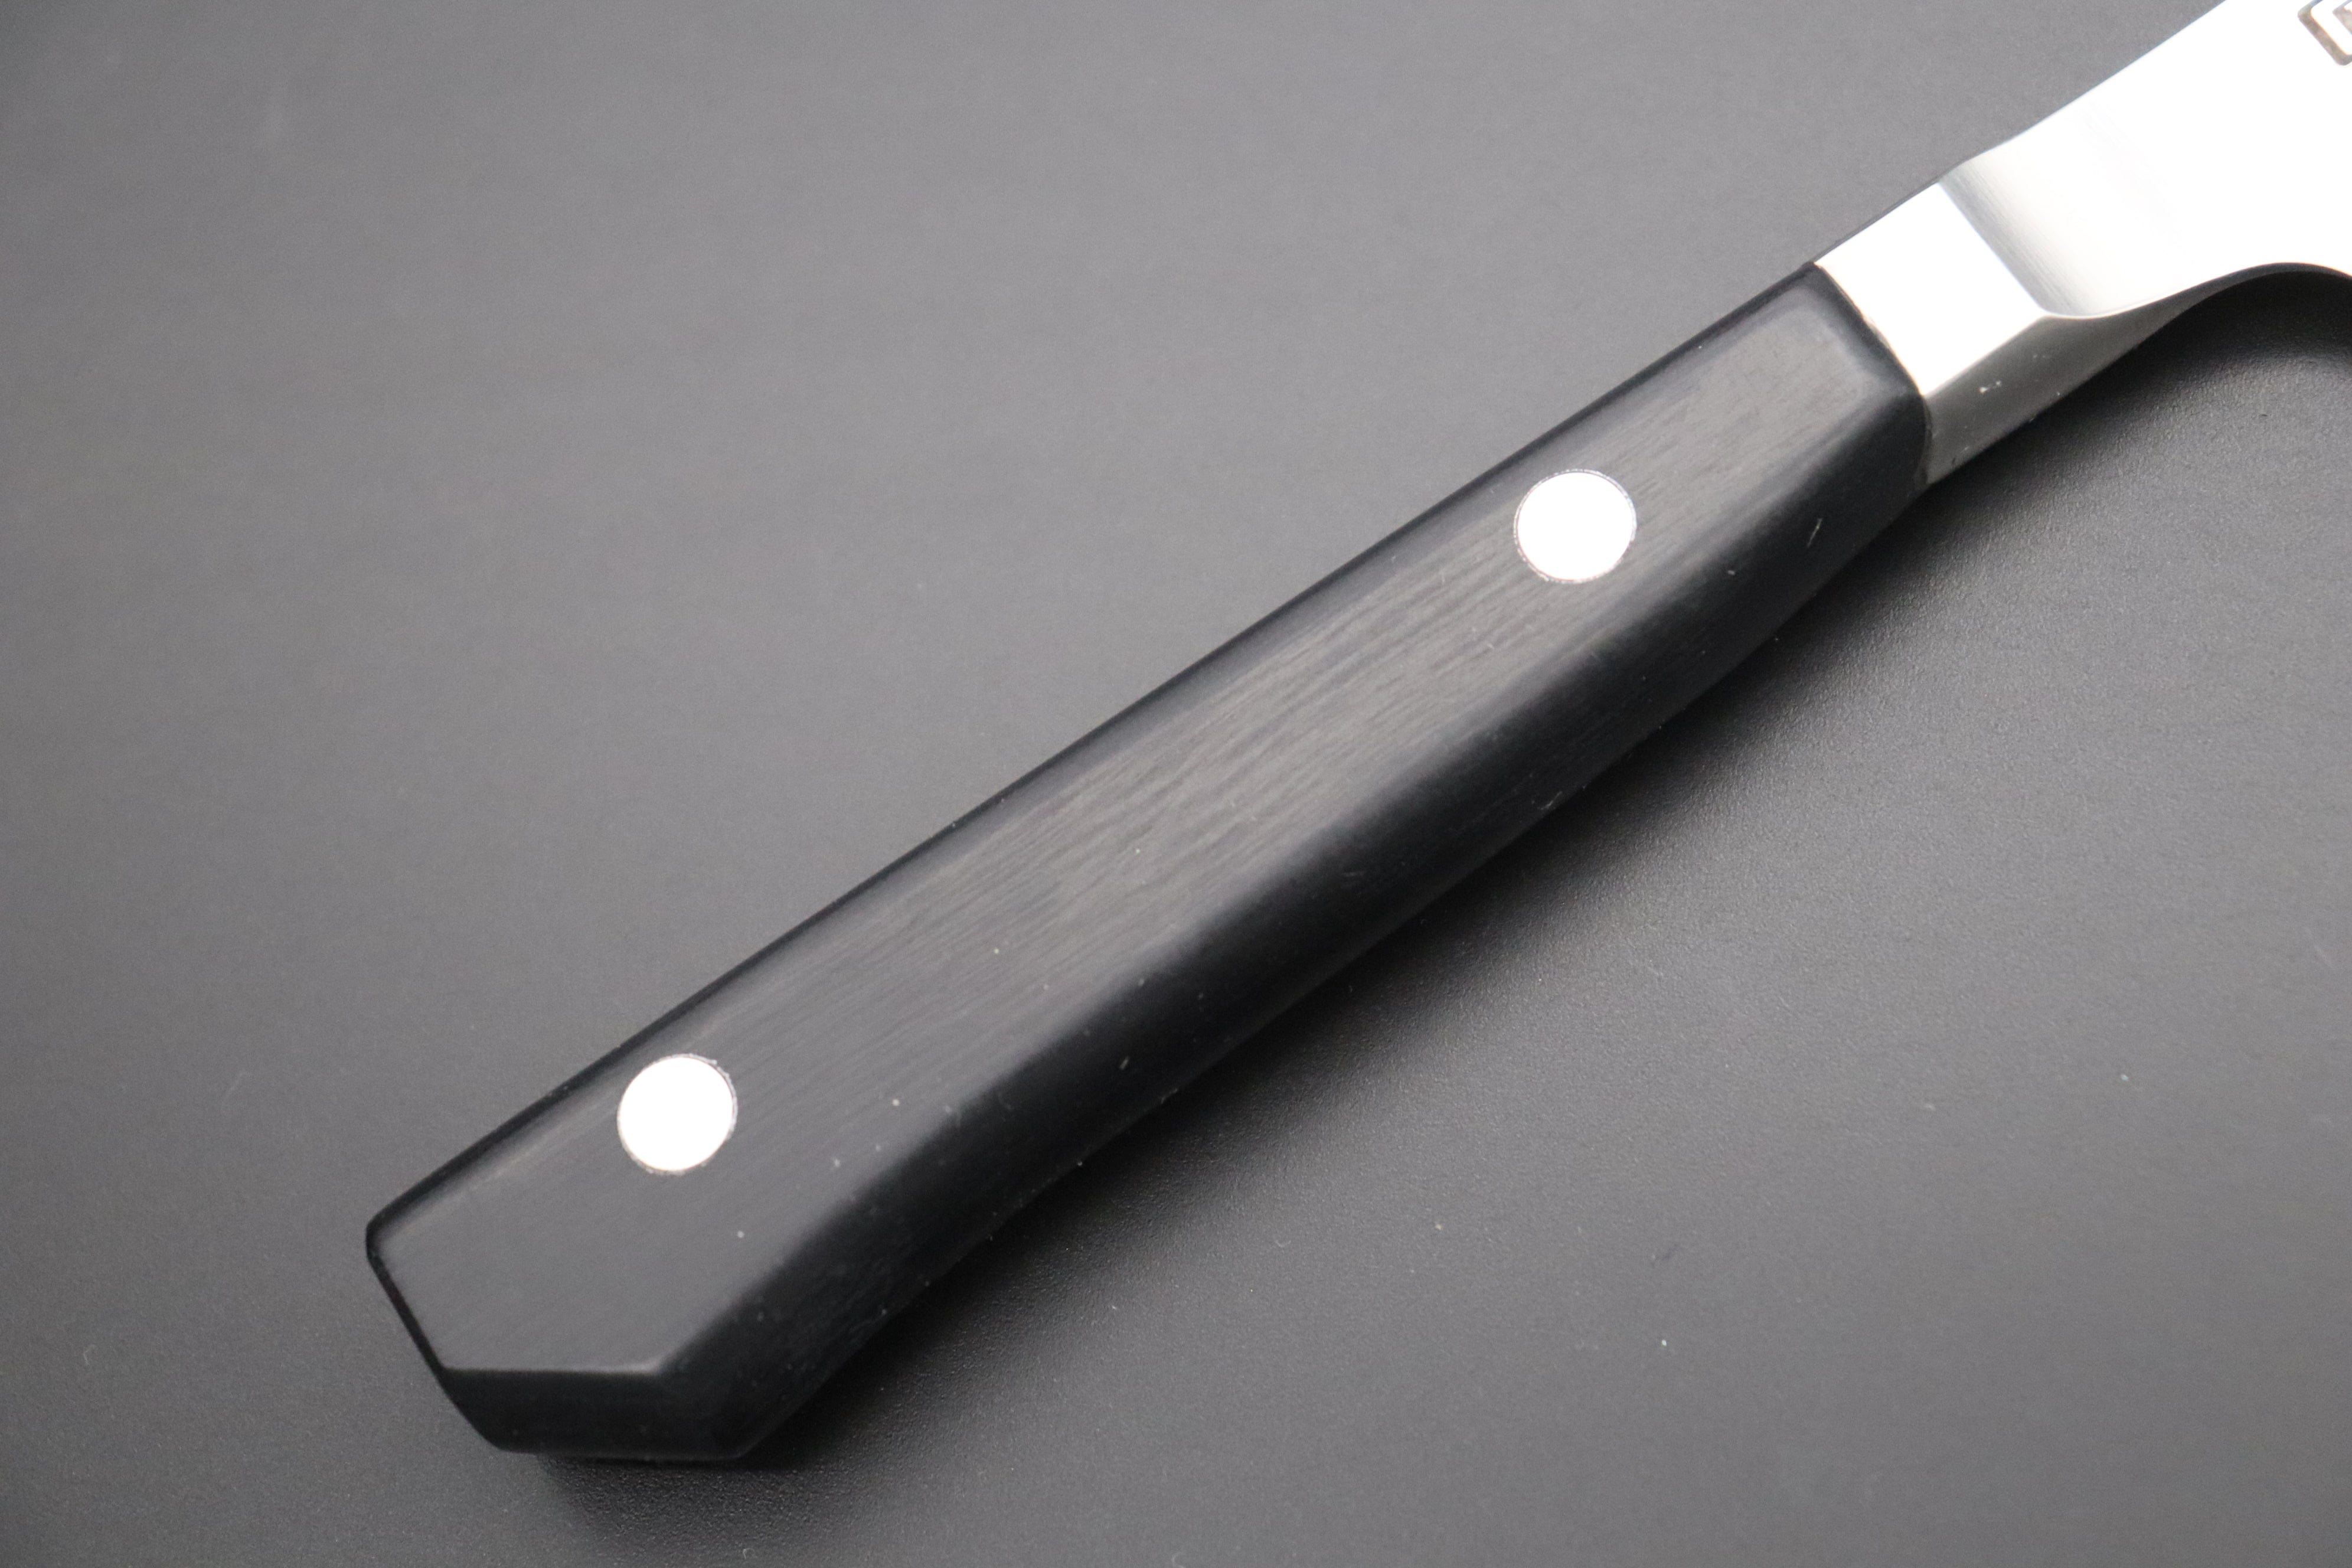 https://japanesechefsknife.com/cdn/shop/files/glestain-fillet-knife-glestain-fillet-knife-210mm-and-250mm-2-sizes-flexible-blade-42931133841691.jpg?v=1695784908